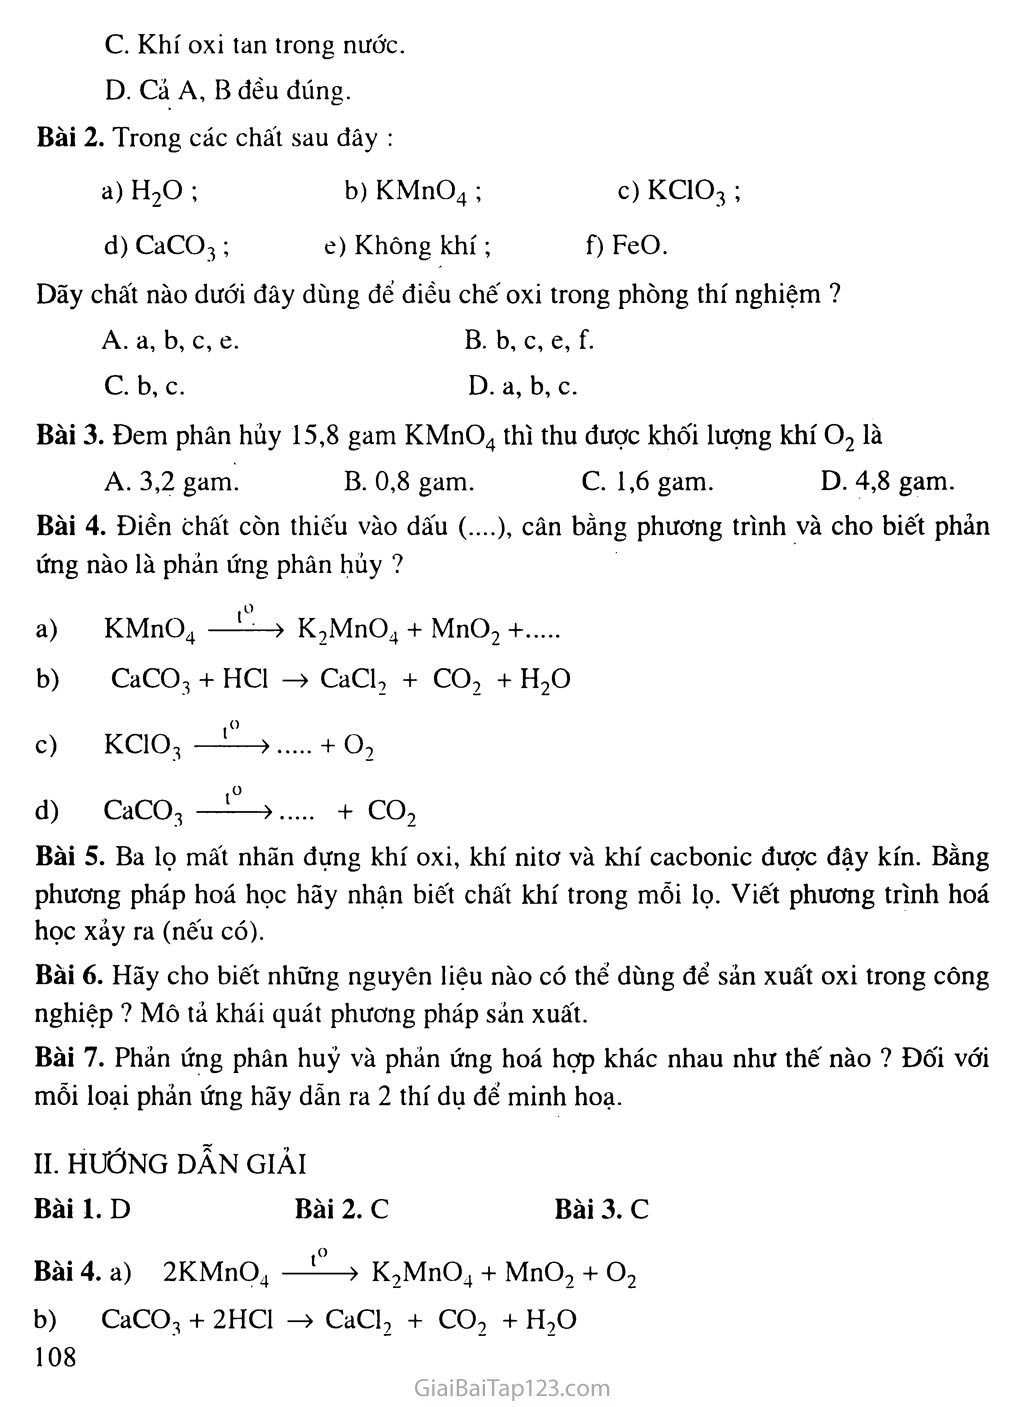 Bài 27: Điều chế khí oxi - Phản ứng phân hủy trang 3